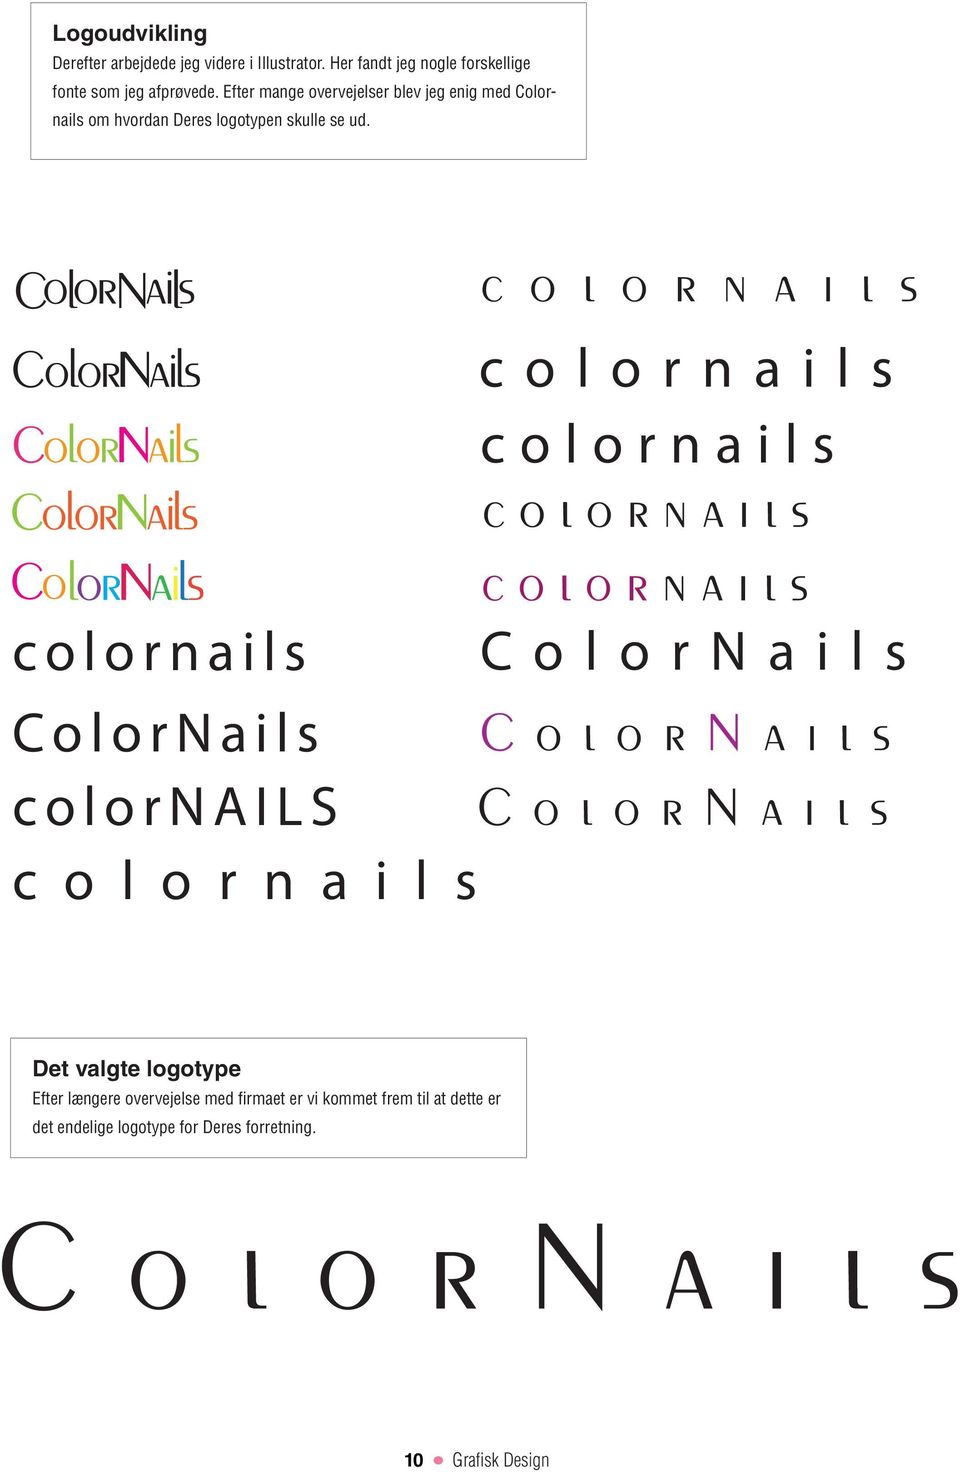 Efter mange overvejelser blev jeg enig med Colornails om hvordan Deres logotypen skulle se ud.